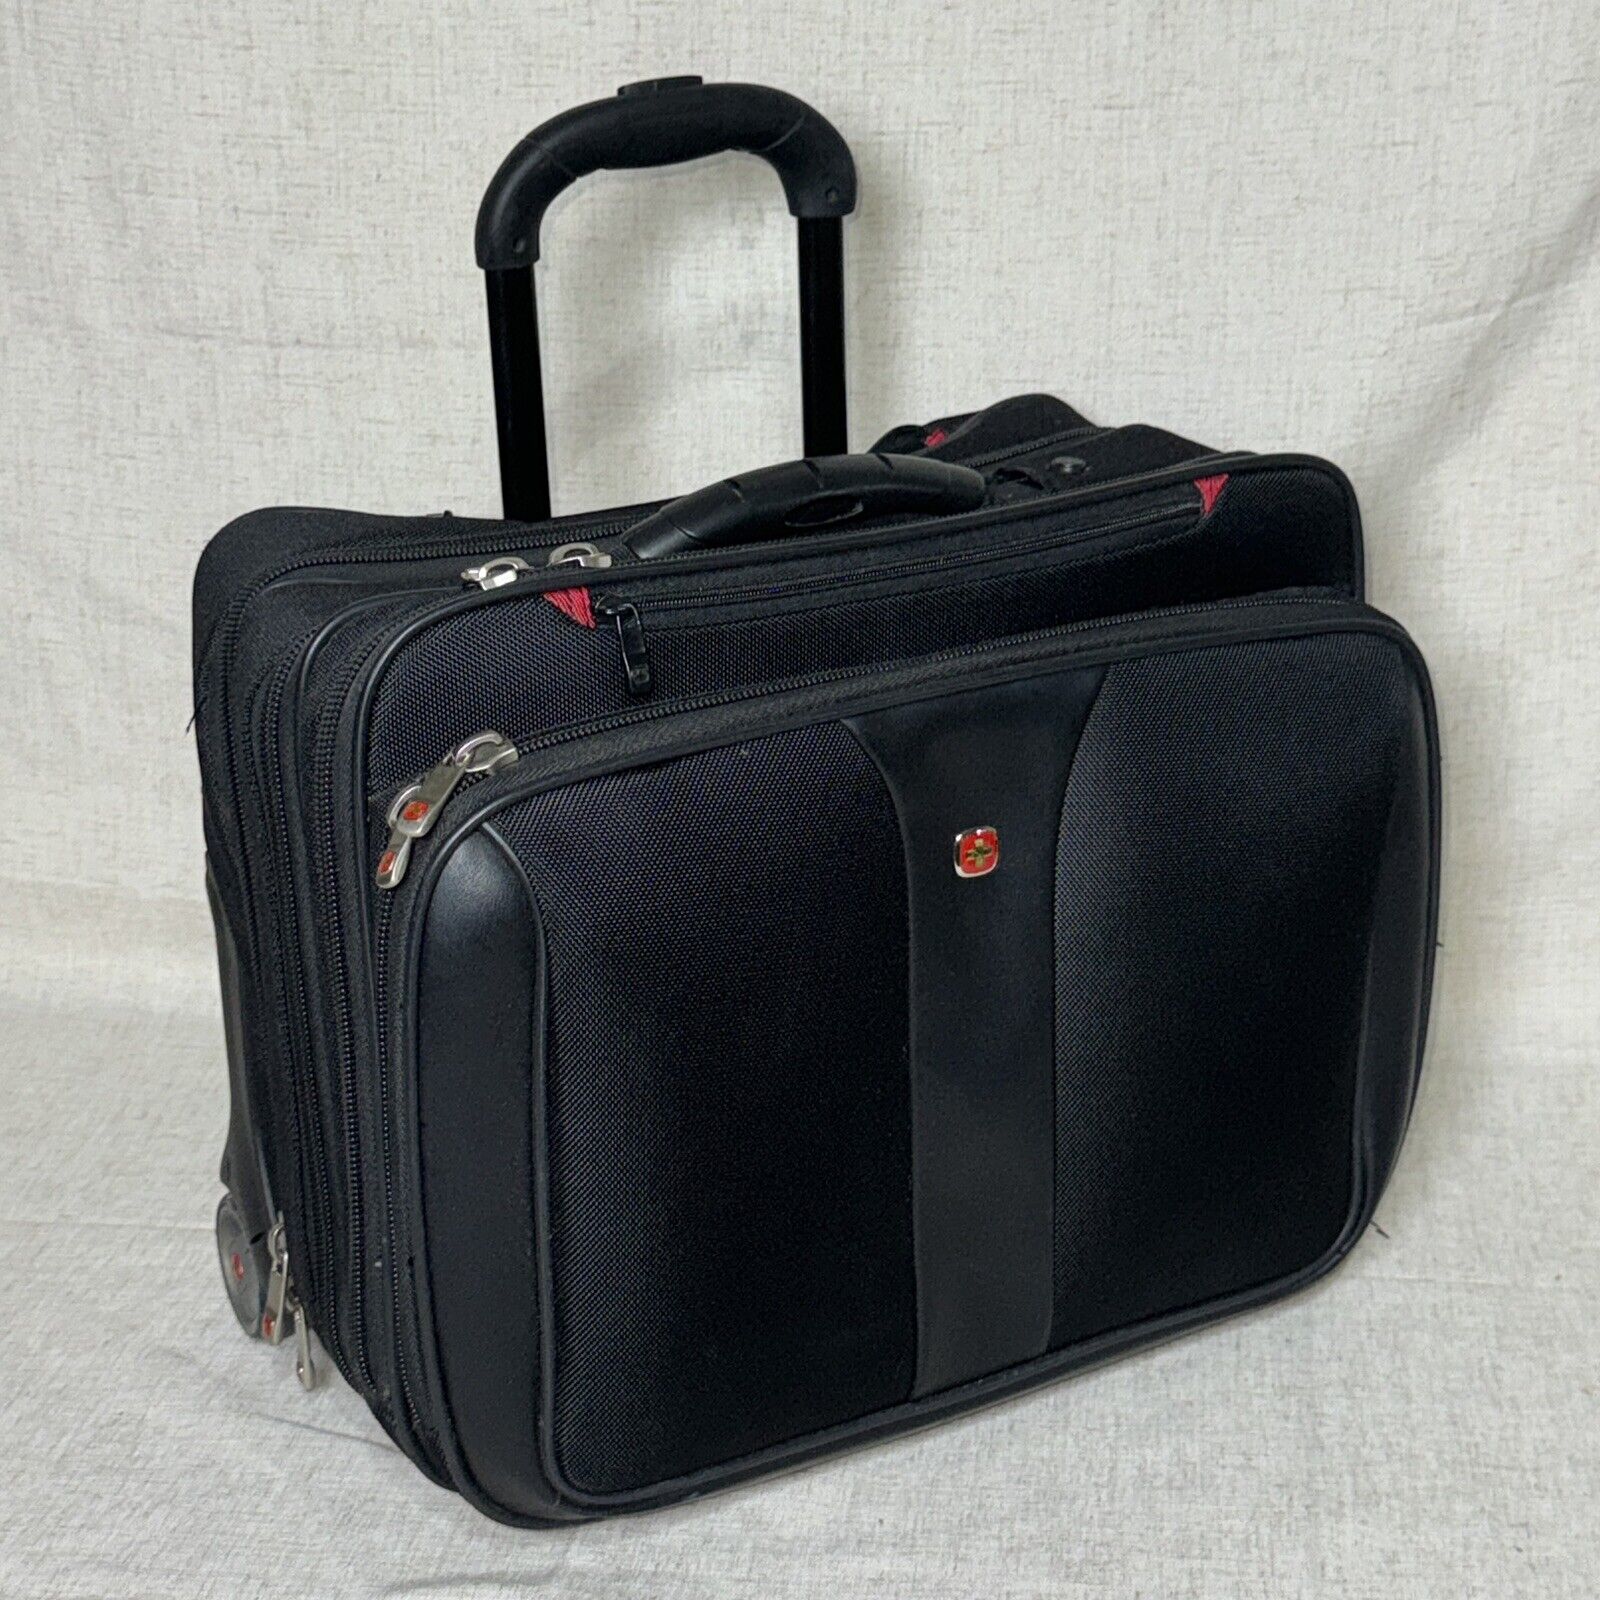 Wenger Swiss Army Patriot Rolling Business Suit Case Laptop Bag Excellent Shape